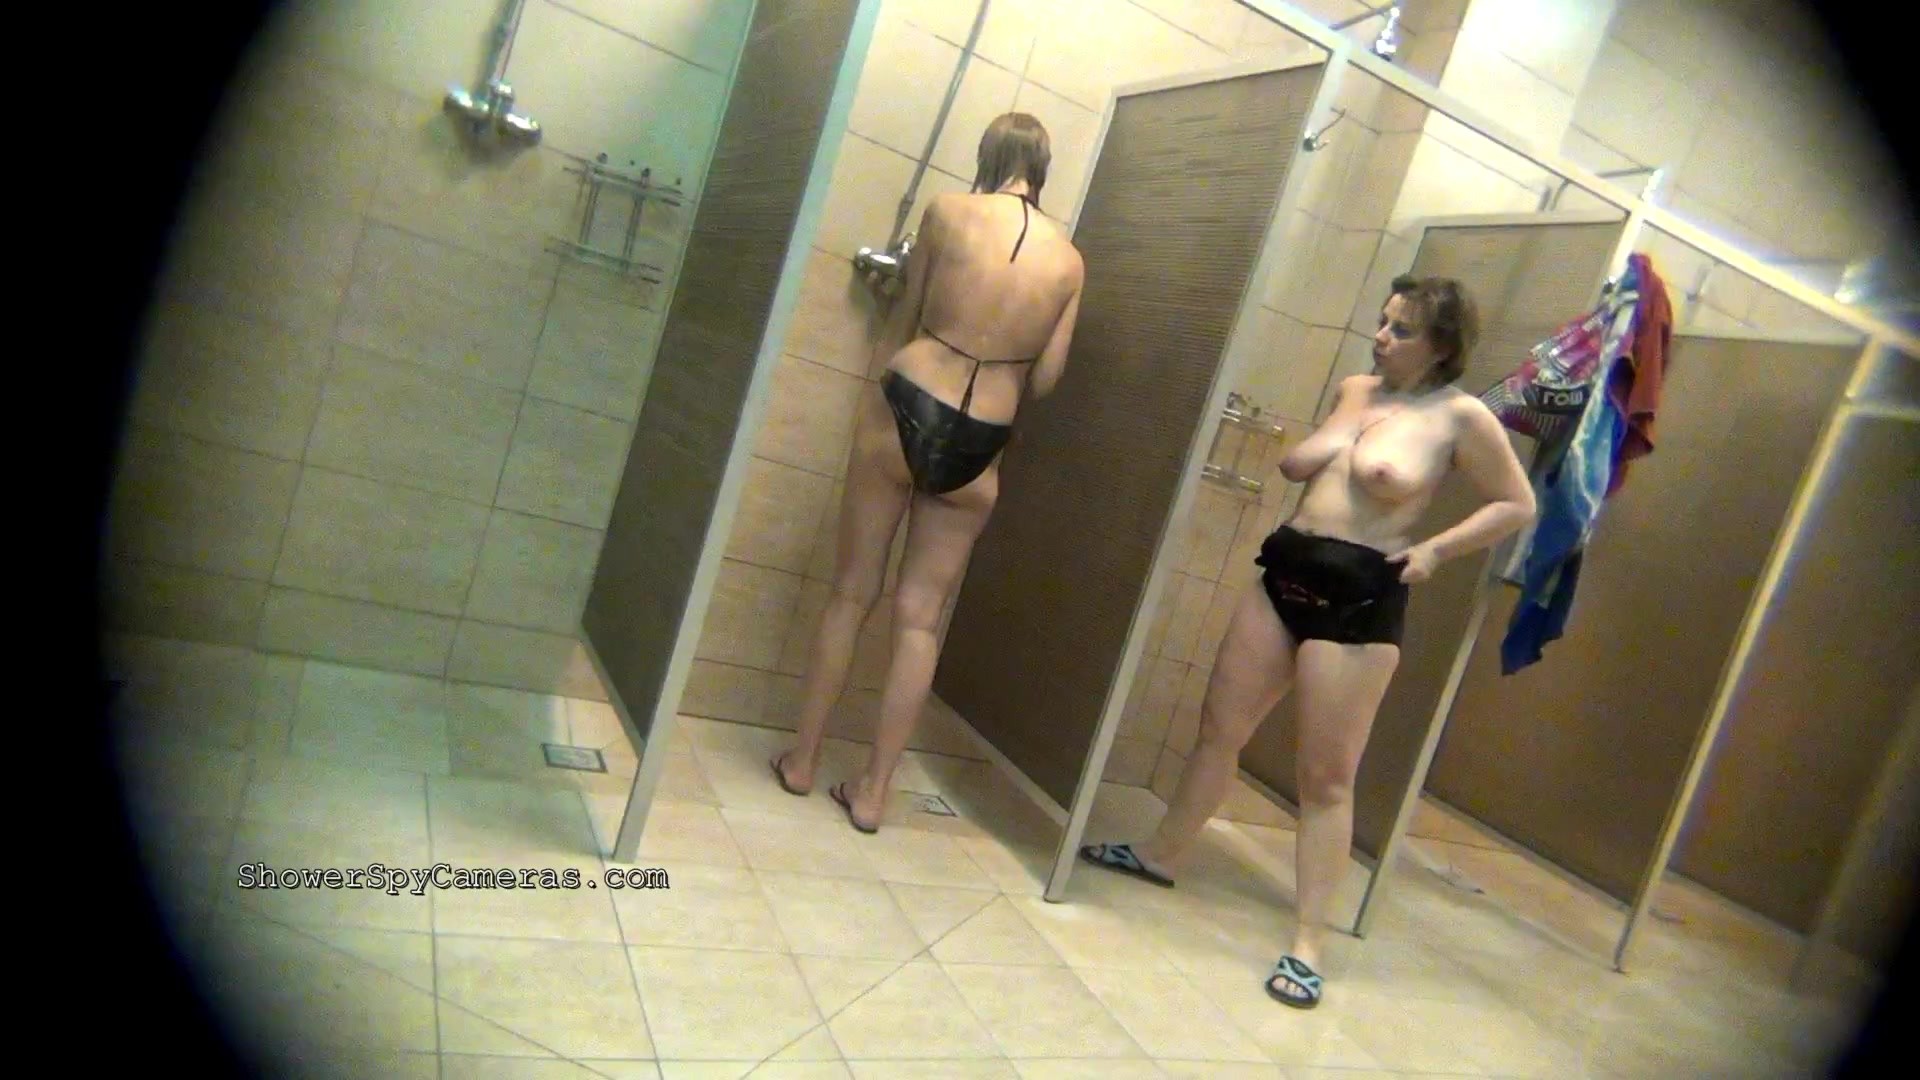 скрытые камеры в ванной с голыми женщинами фото 75